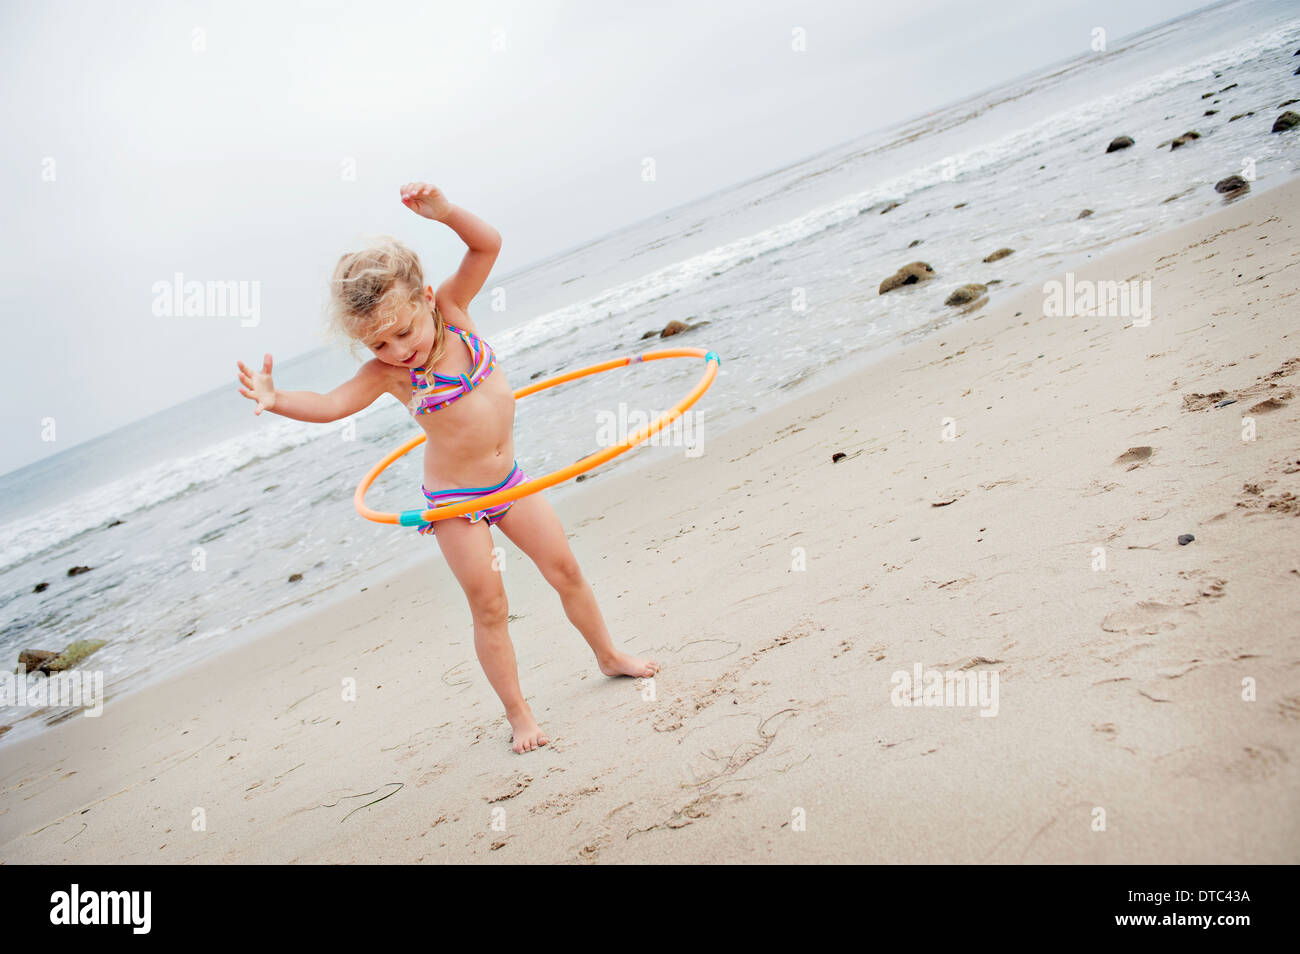 Jeune fille avec hoolahoop sur la plage Banque D'Images